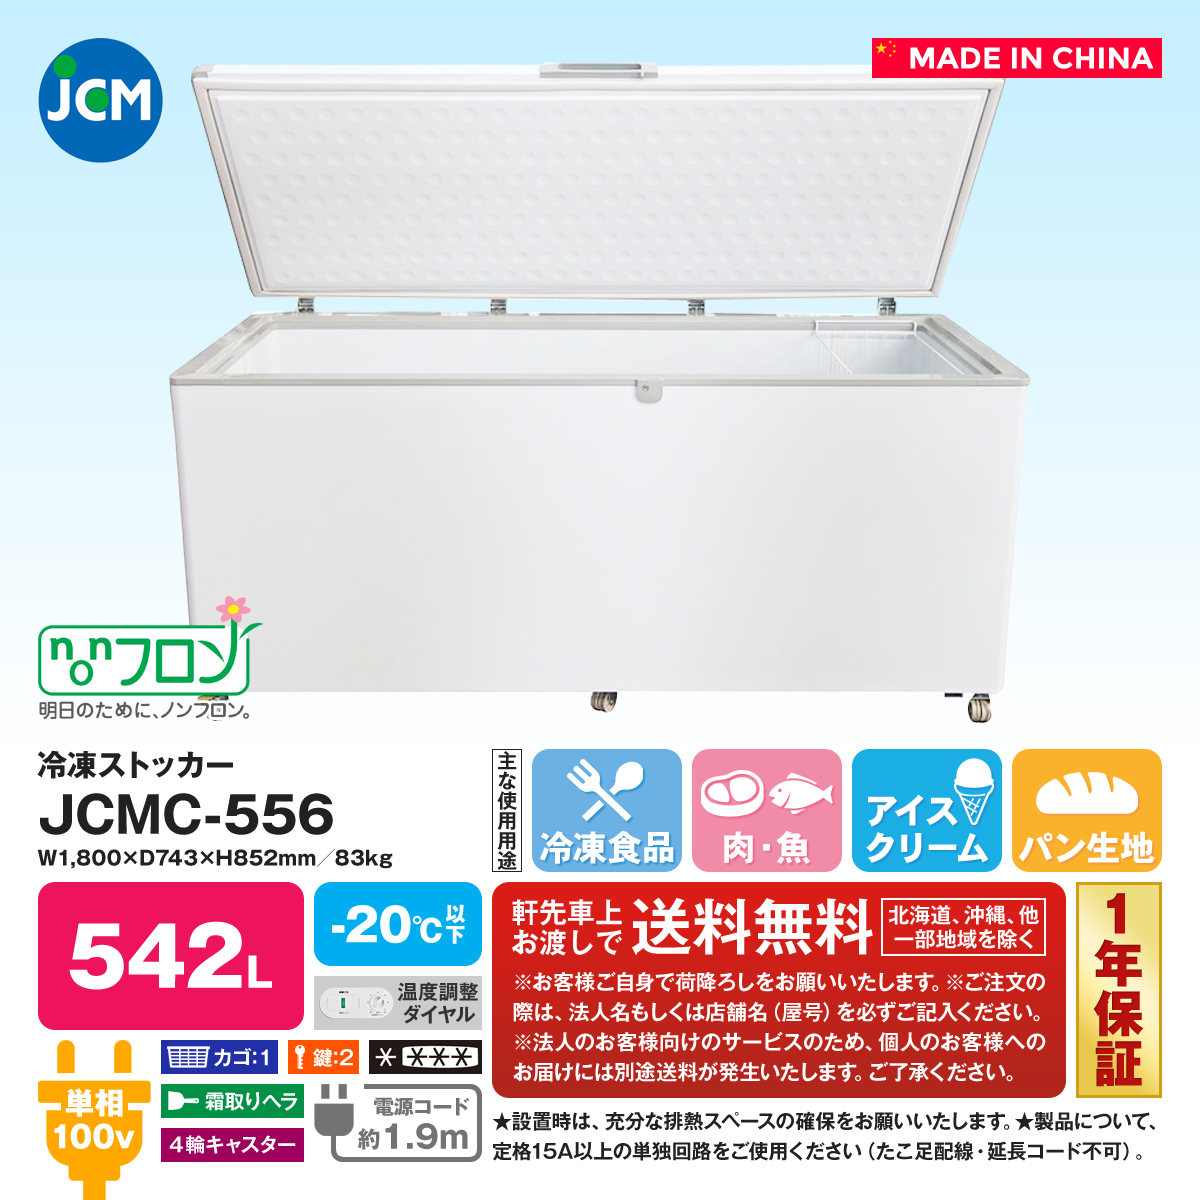 人気定番の 清風堂東京本店冷凍ストッカー JCMC-310